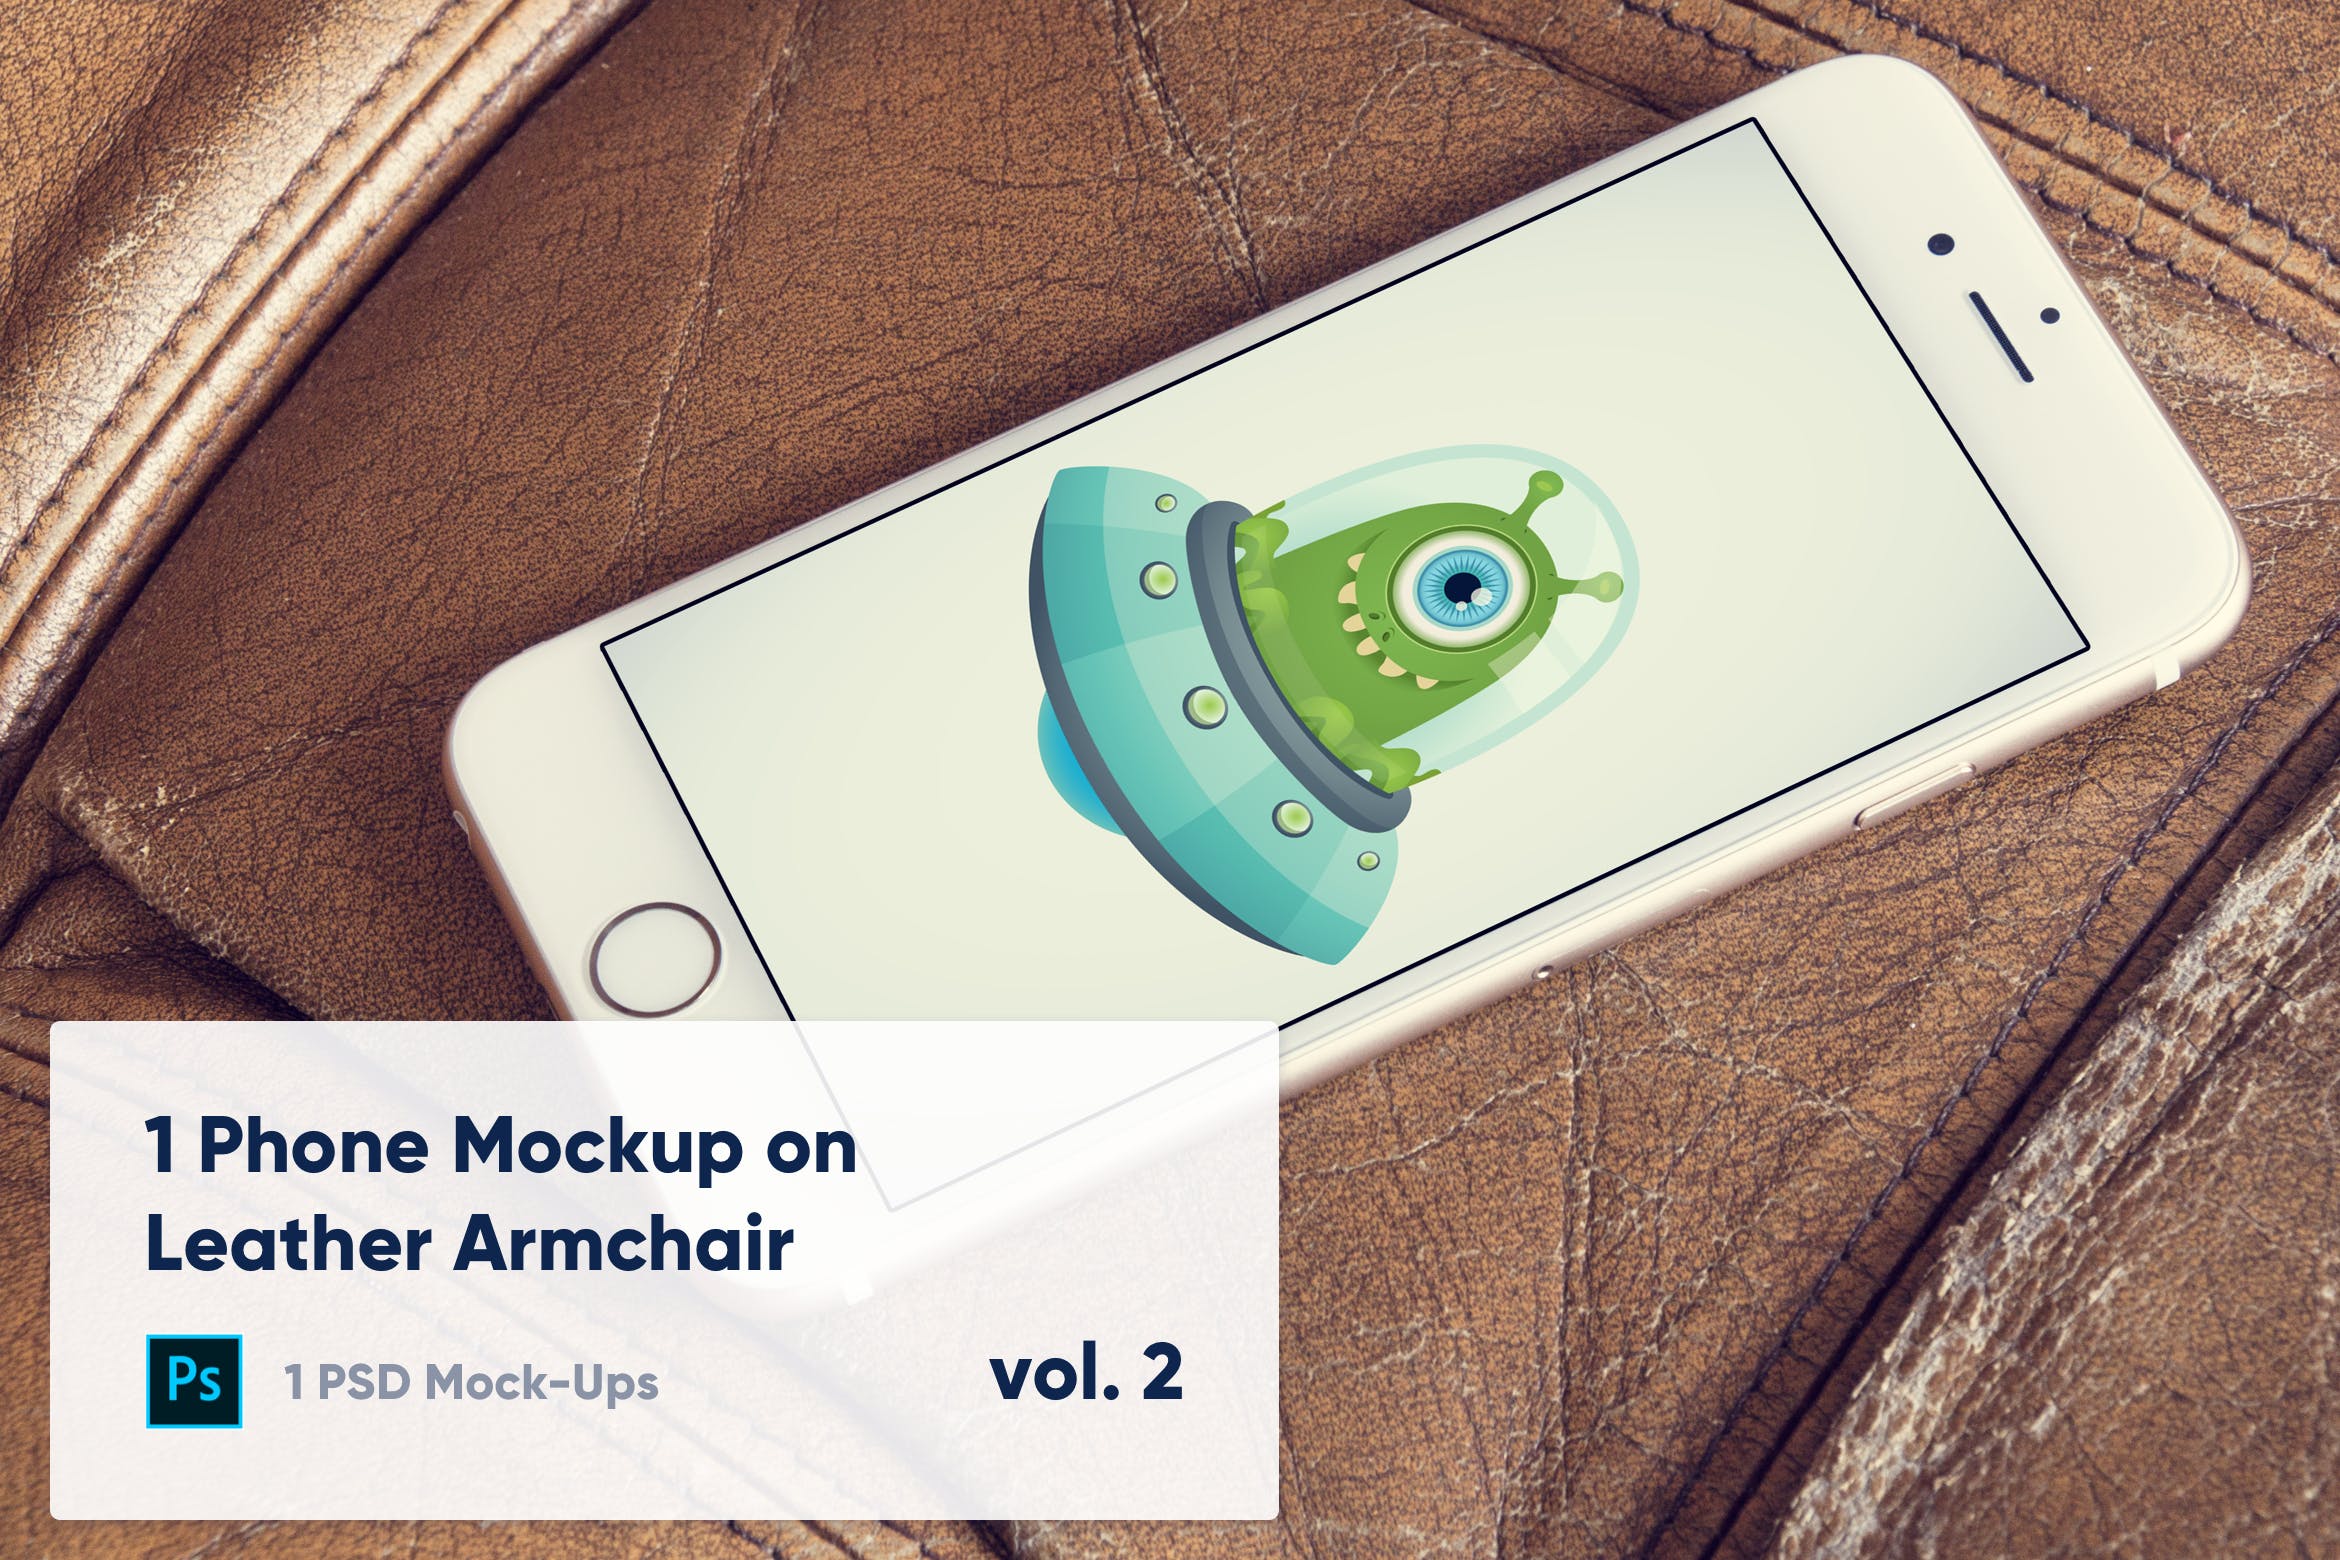 皮革扶手椅上iPhone手机UI设计演示第一素材精选样机模板v1 1 Phone Mockup on Leather Armchair Vol. 1插图